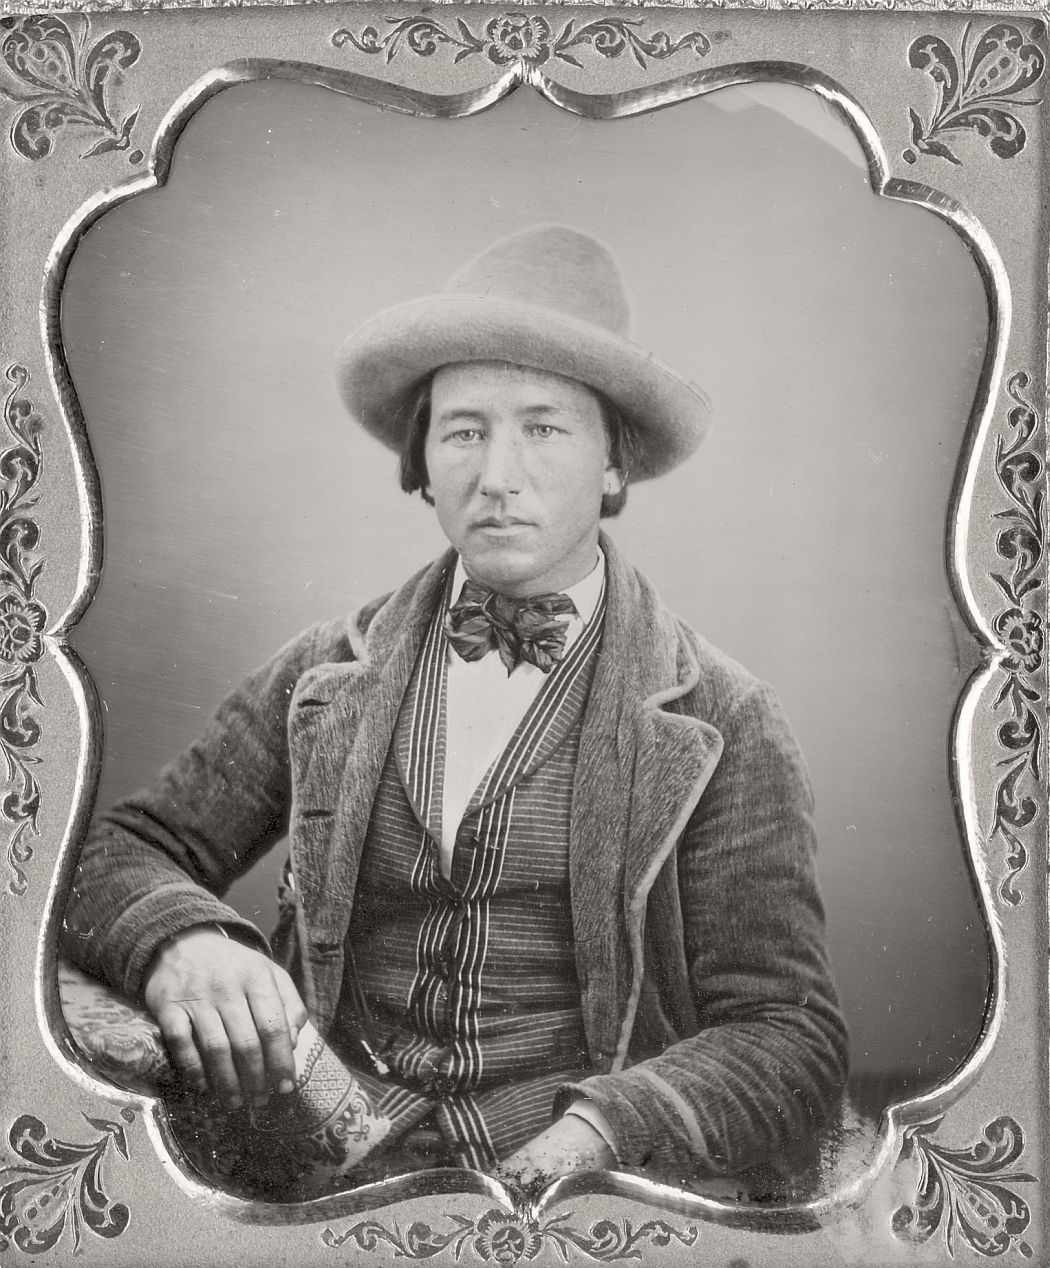 victorian-era-daguerreotype-of-men-in-hat-1850s-xix-century-09